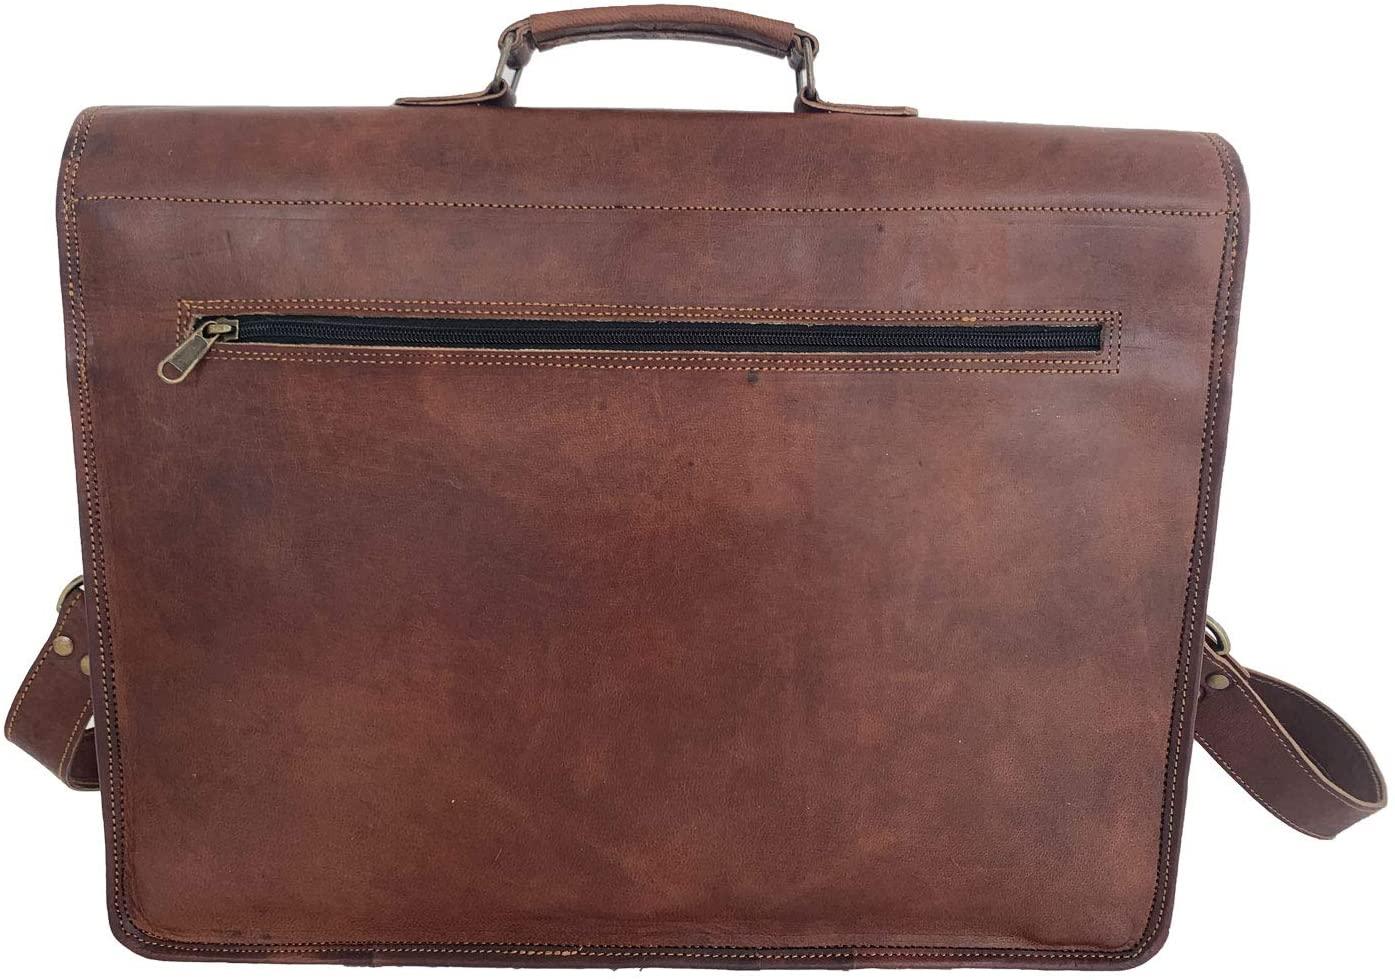 Modern Leather Satchel Messenger Bag - FR Fashion Co.